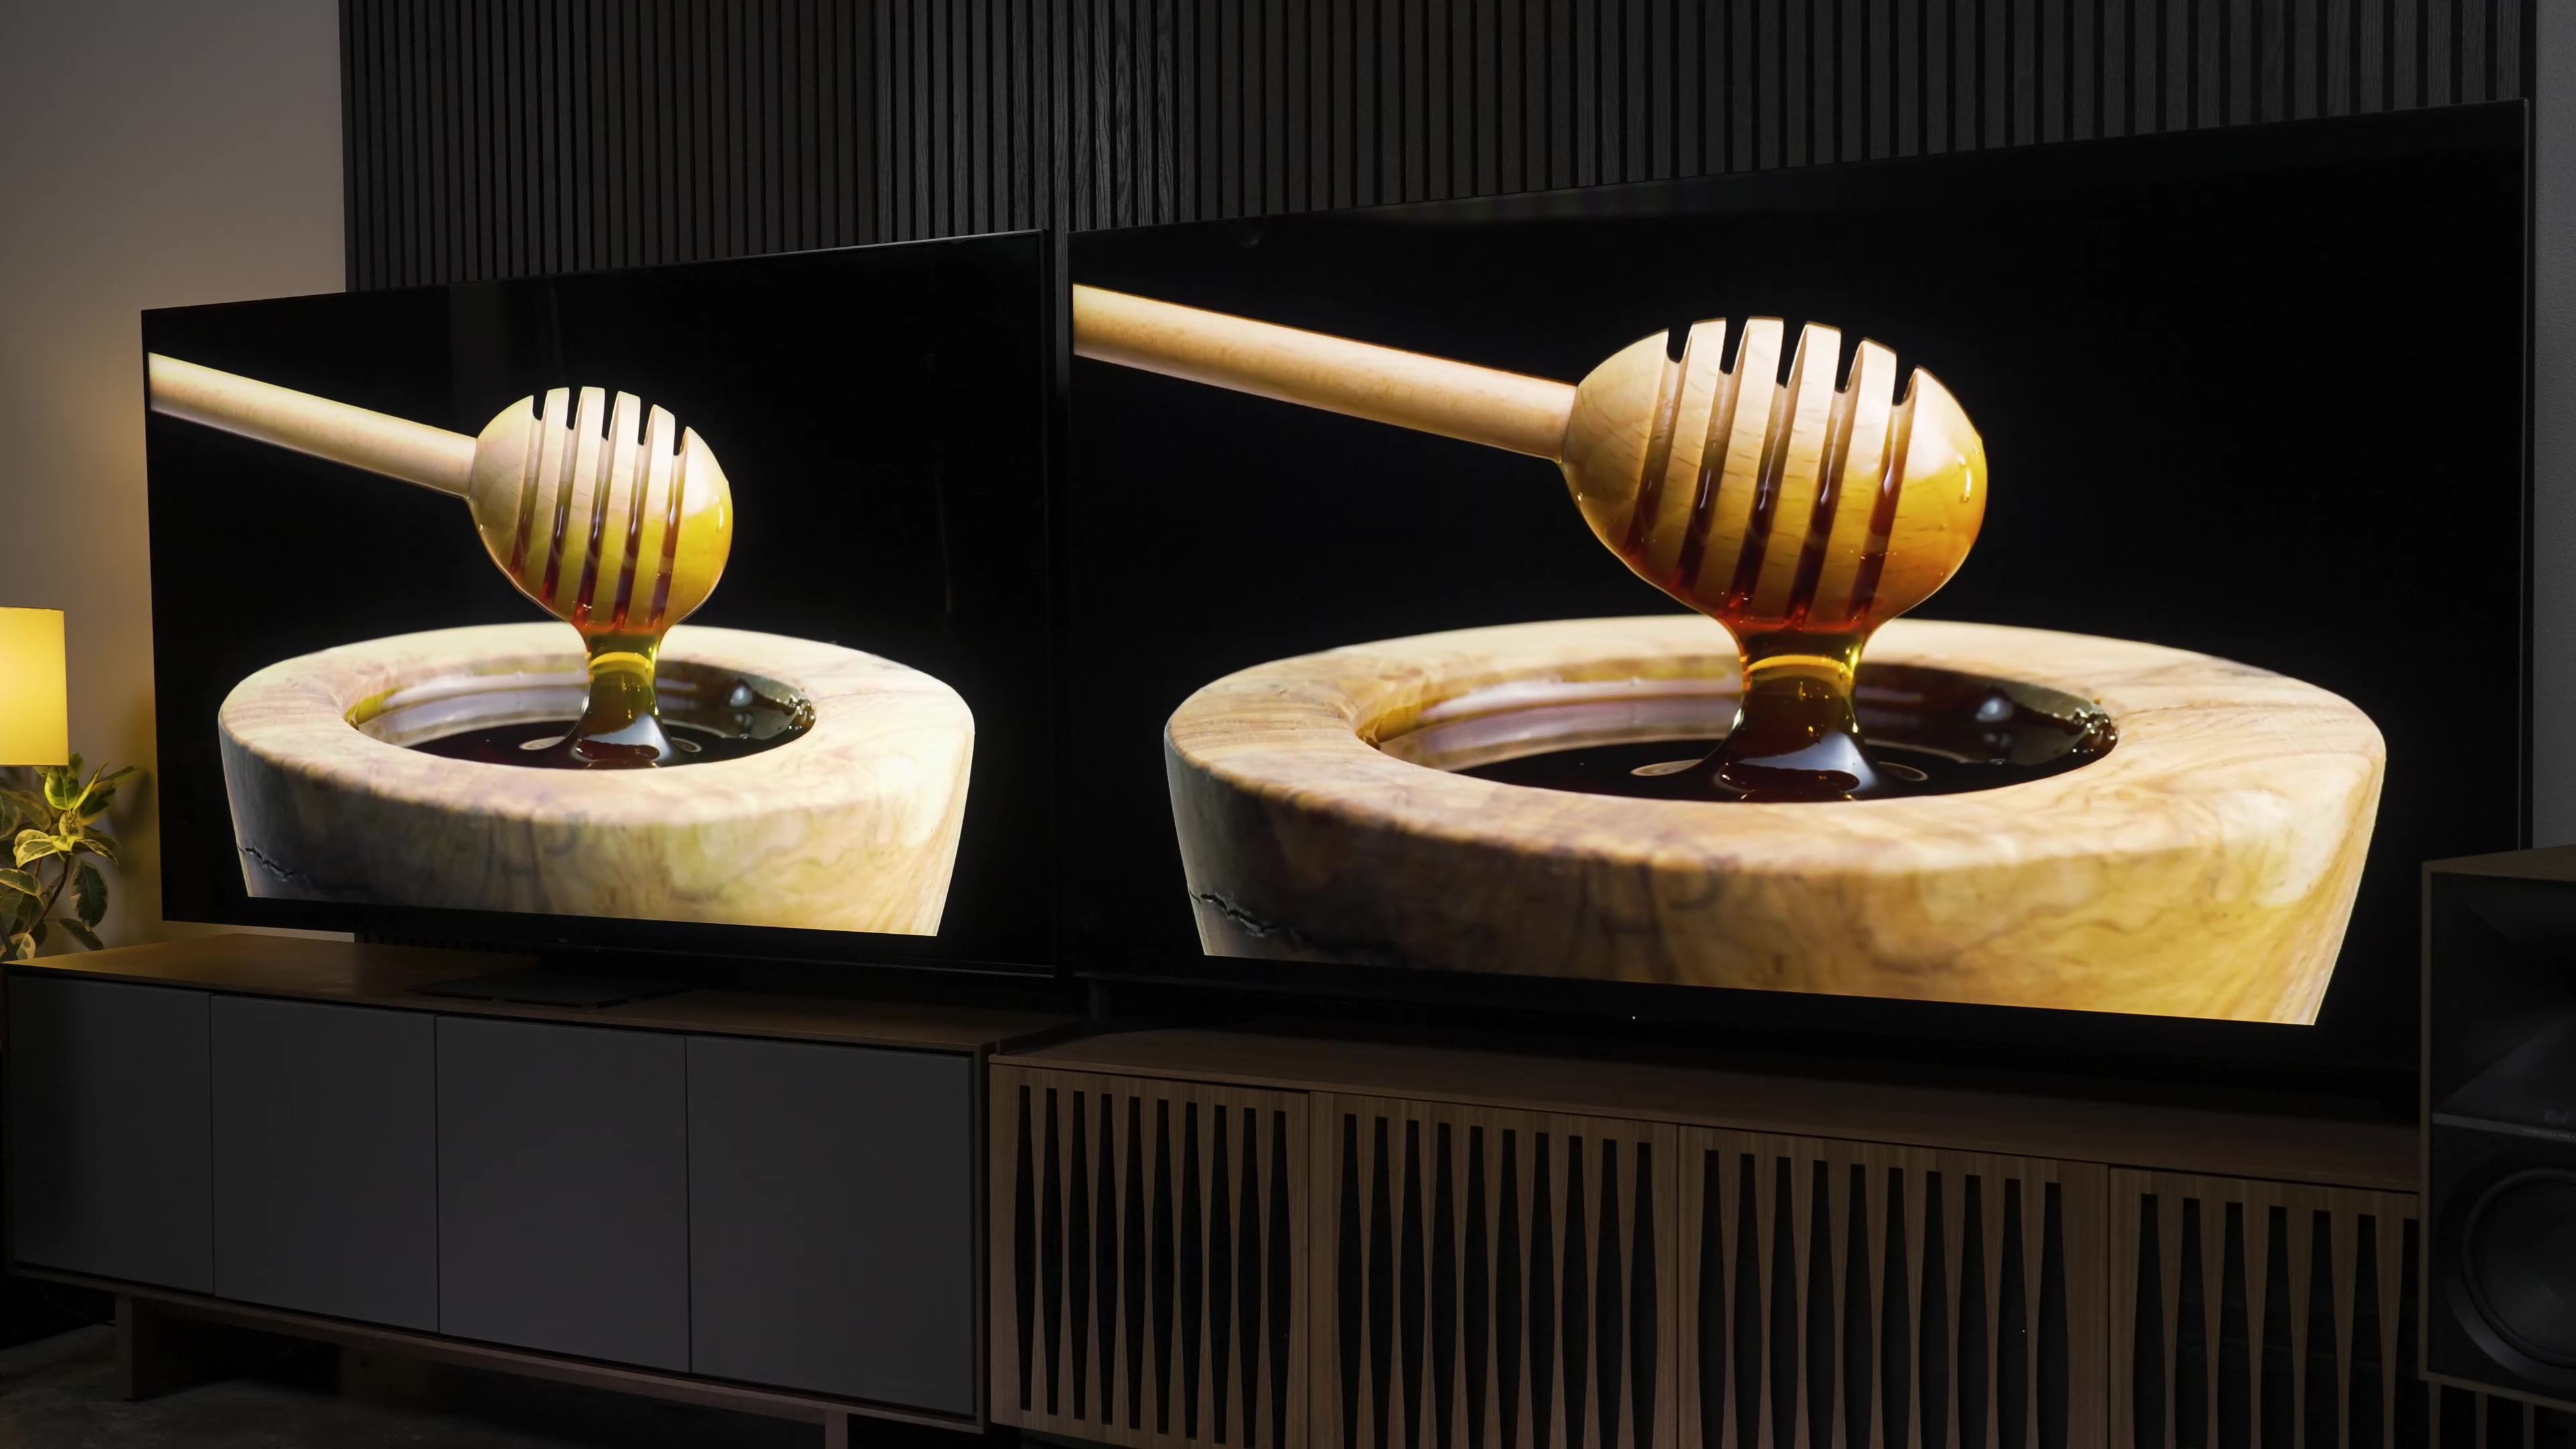 Comparação lado a lado entre Sony Bravia X95L e TCL QM8 mostrando uma cena de chuviscos de mel subindo de recipientes de mel.